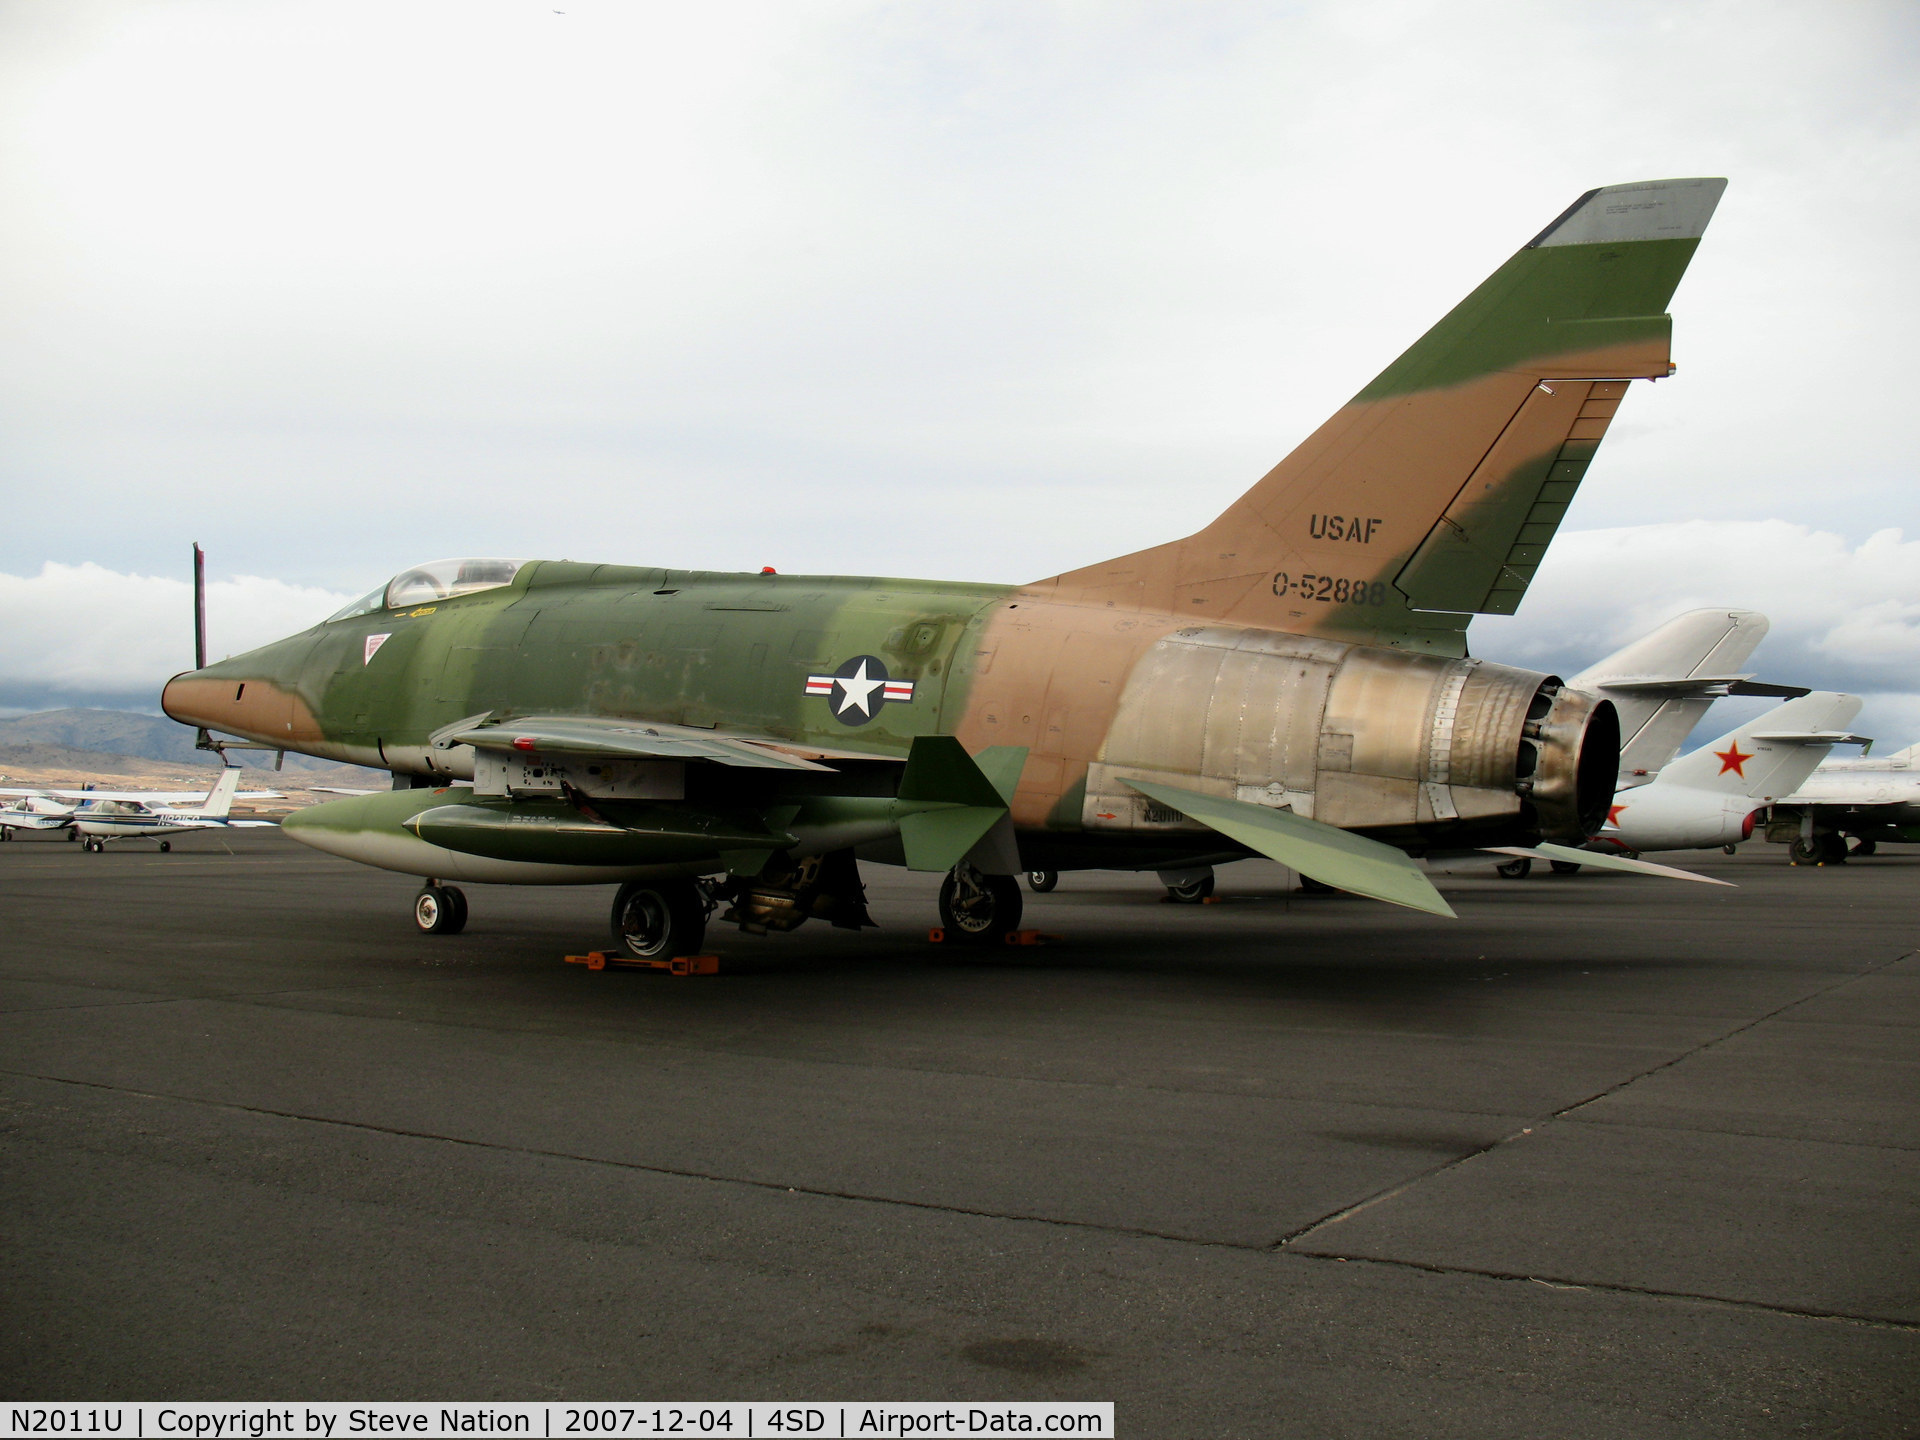 N2011U, 1955 North American F-100D Super Sabre C/N 224-155, North American F-100D 0-52888 Vietnam camo @ Reno-Stead